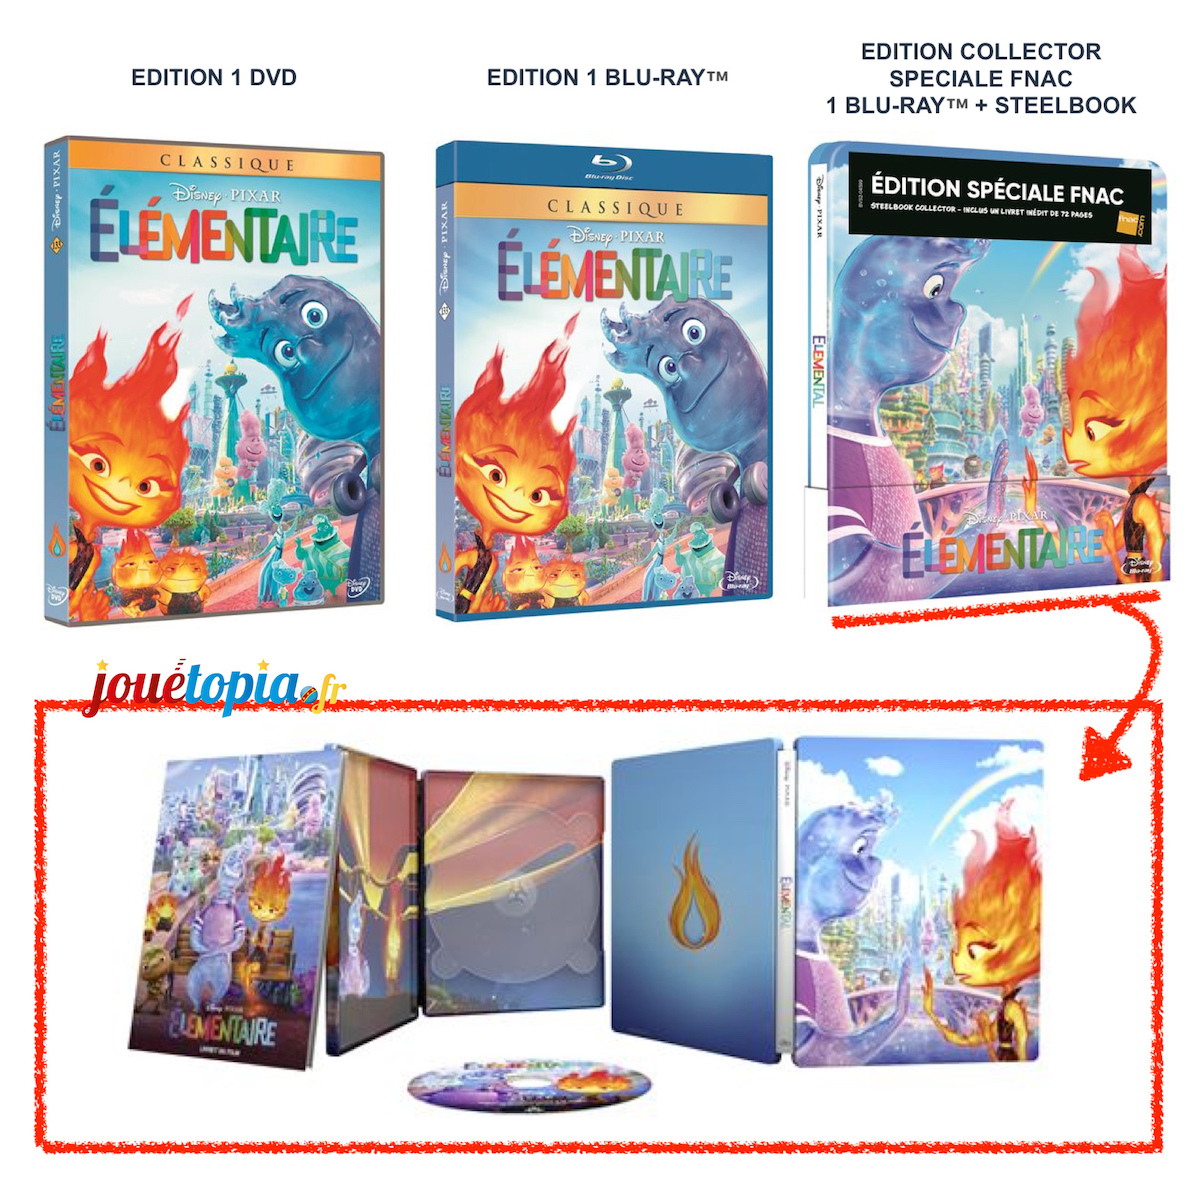 Toutes les éditions de Élémentaire (Pixar) en Blu-Ray et DVD • Jouétopia